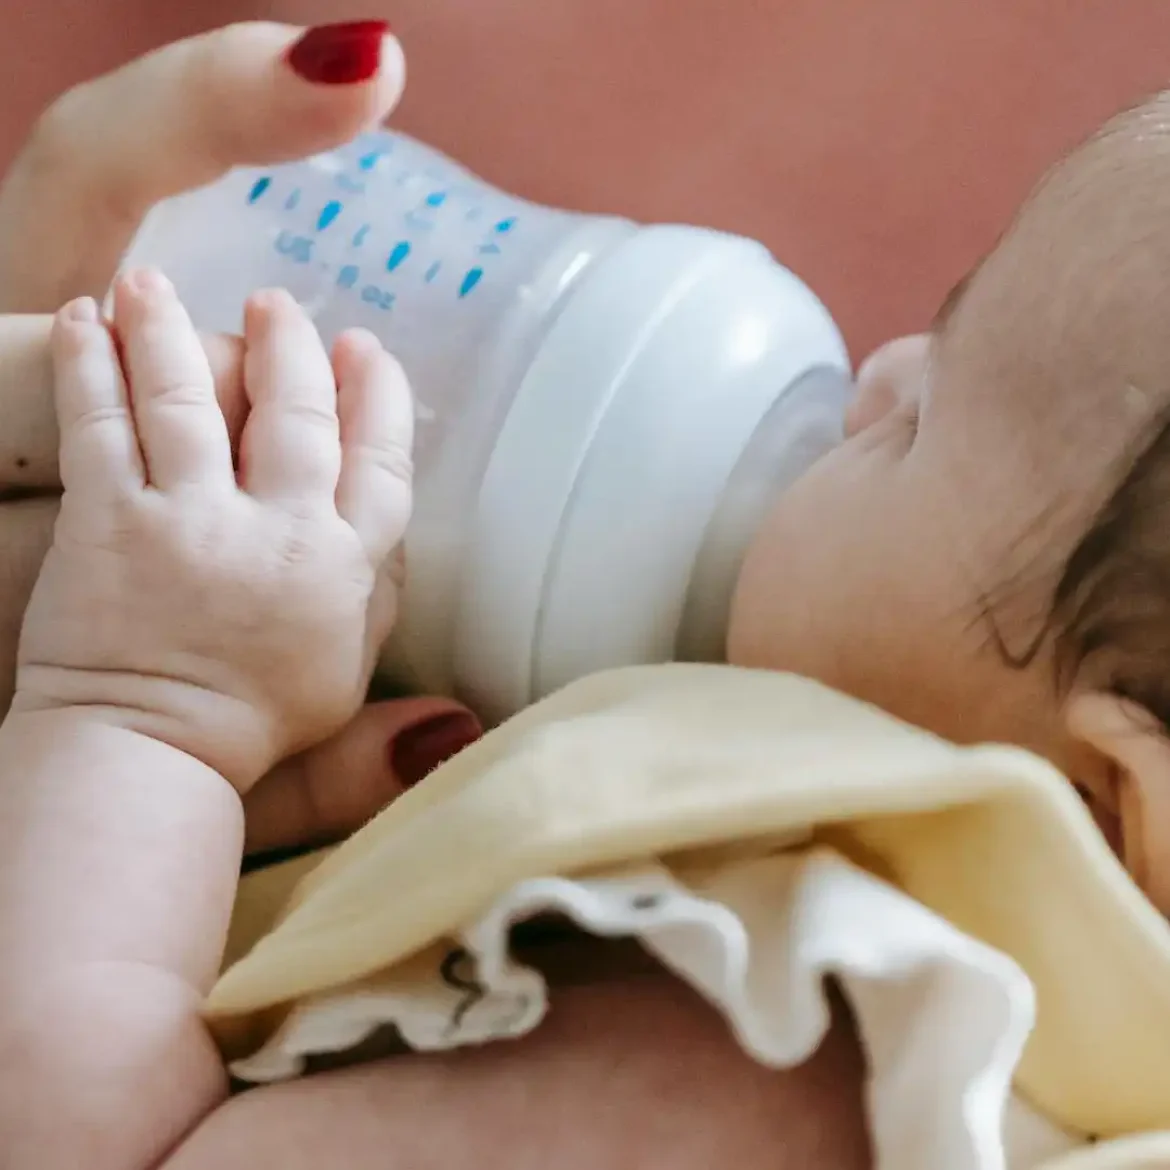 Baby krijgt fles in plaats van borstvoeding